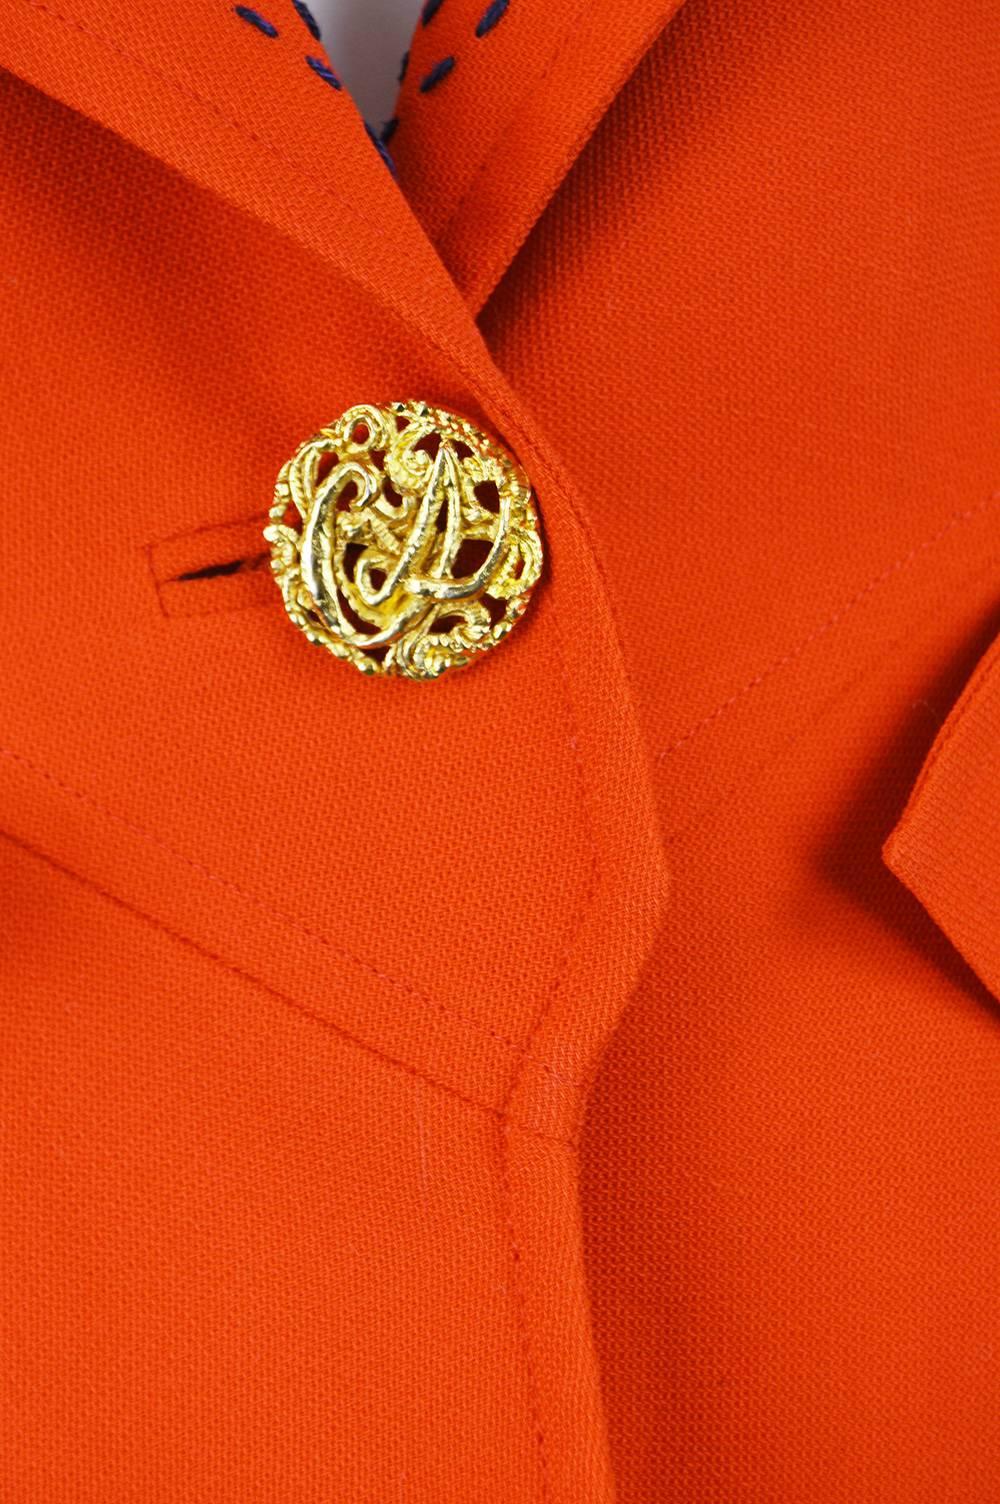 Women's Christian Lacroix Vintage Orange Wool Blazer with Running Stitch Detail, 1980s